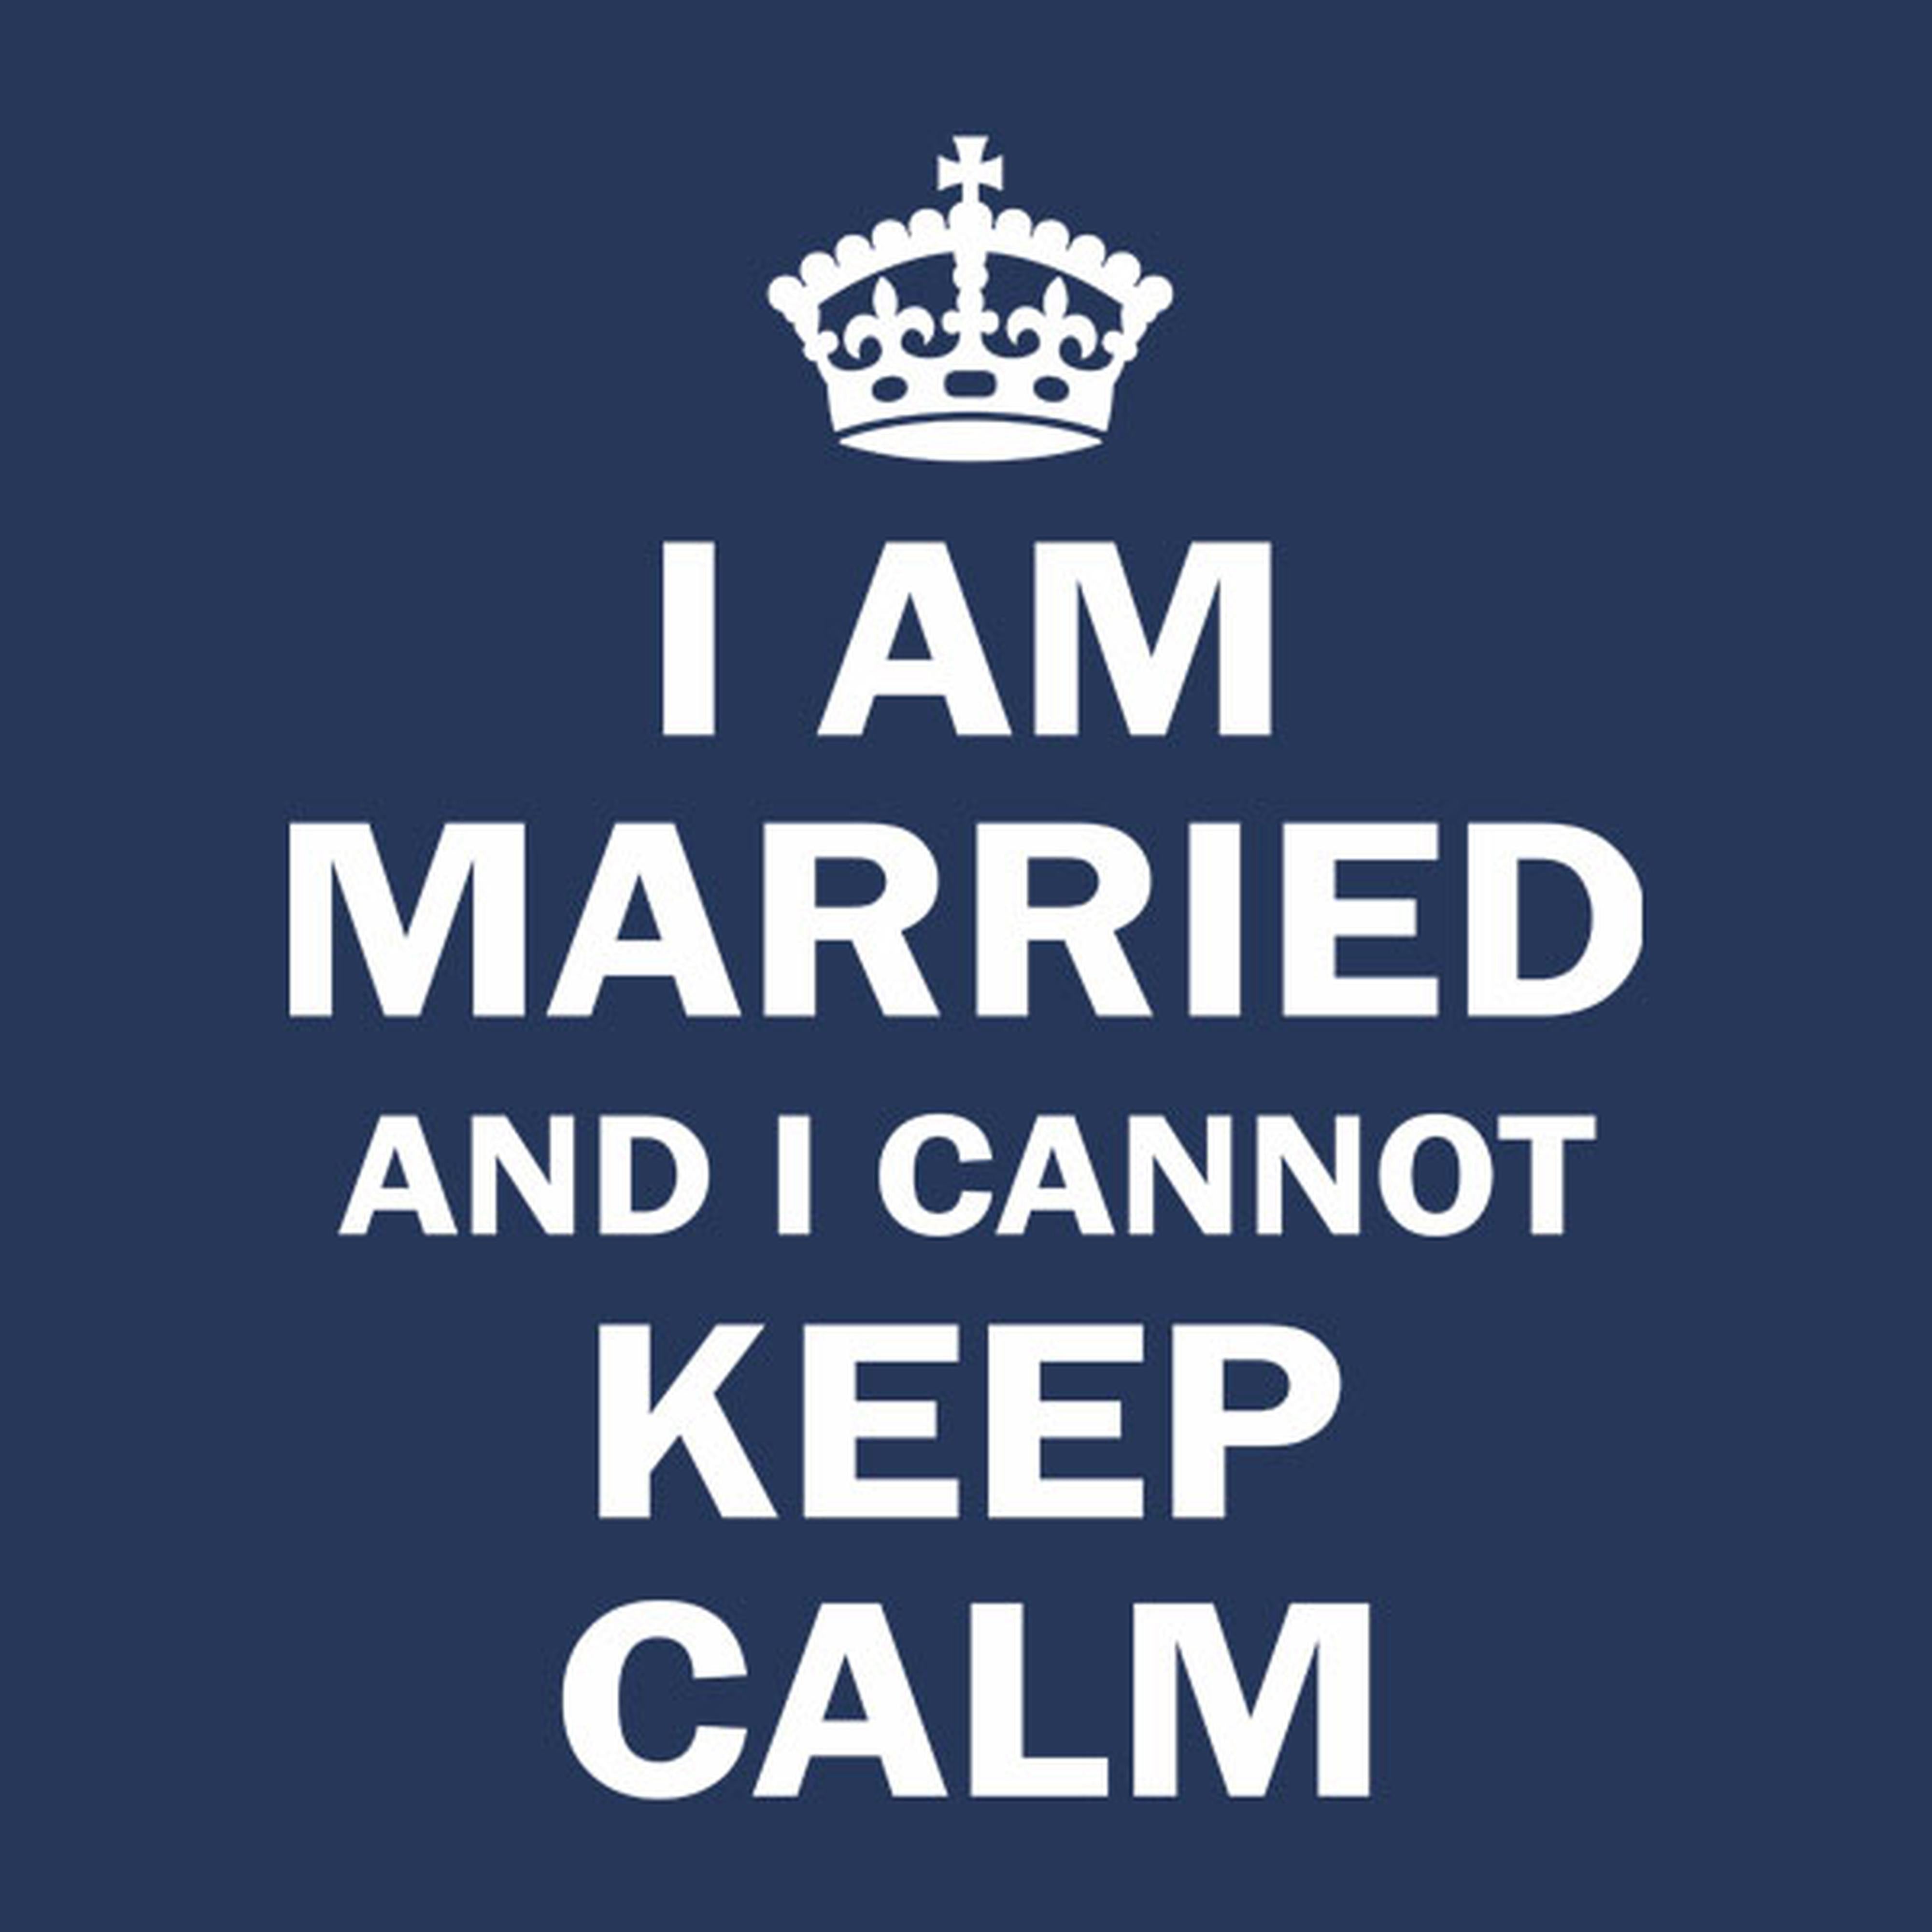 I am married and I cannot keep calm